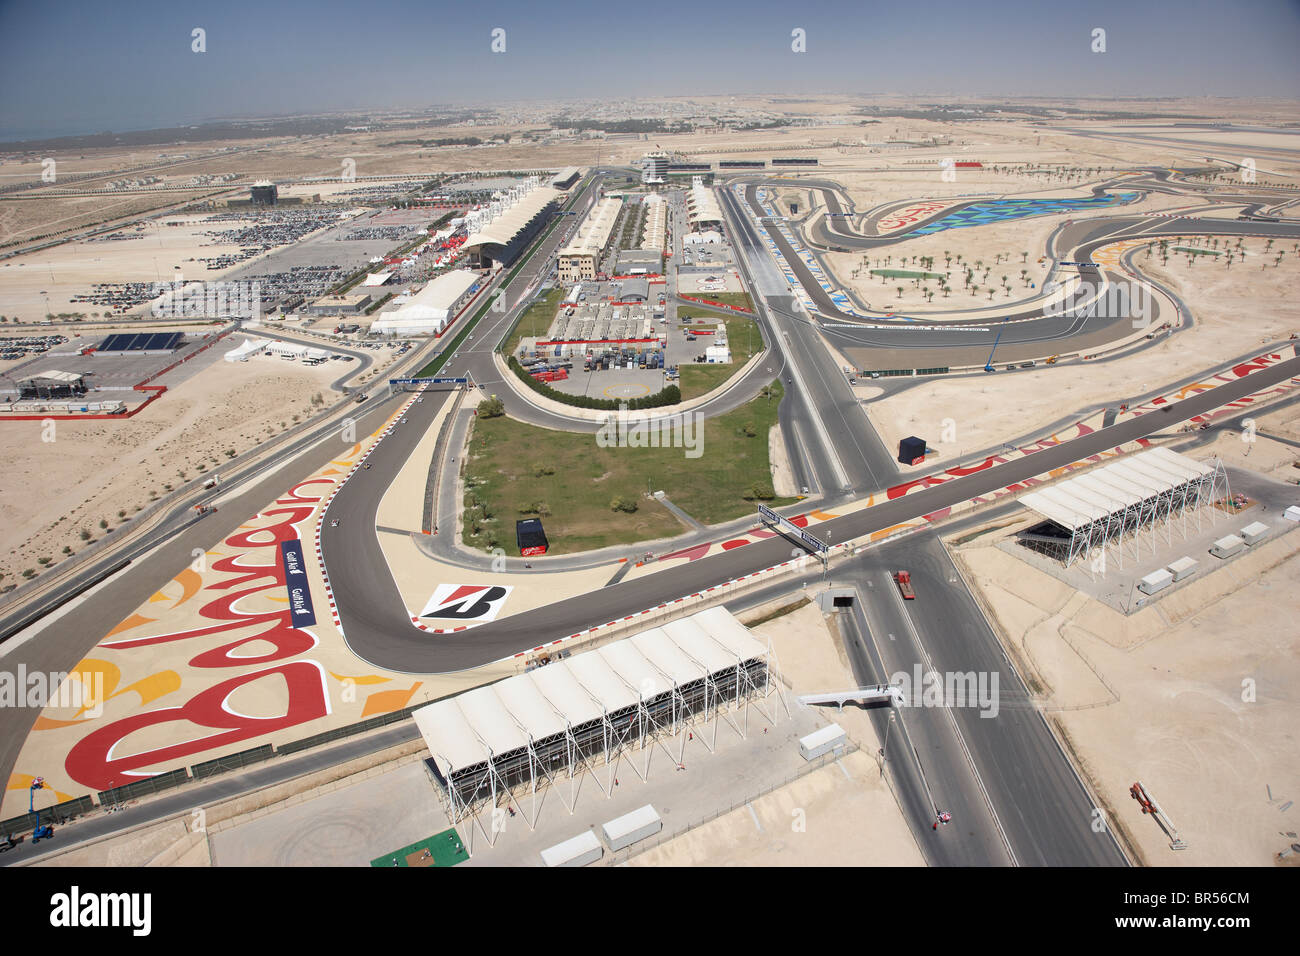 Photo aérienne du Circuit International de Bahreïn lors de l'édition 2010 du Grand Prix de Formule 1 Banque D'Images